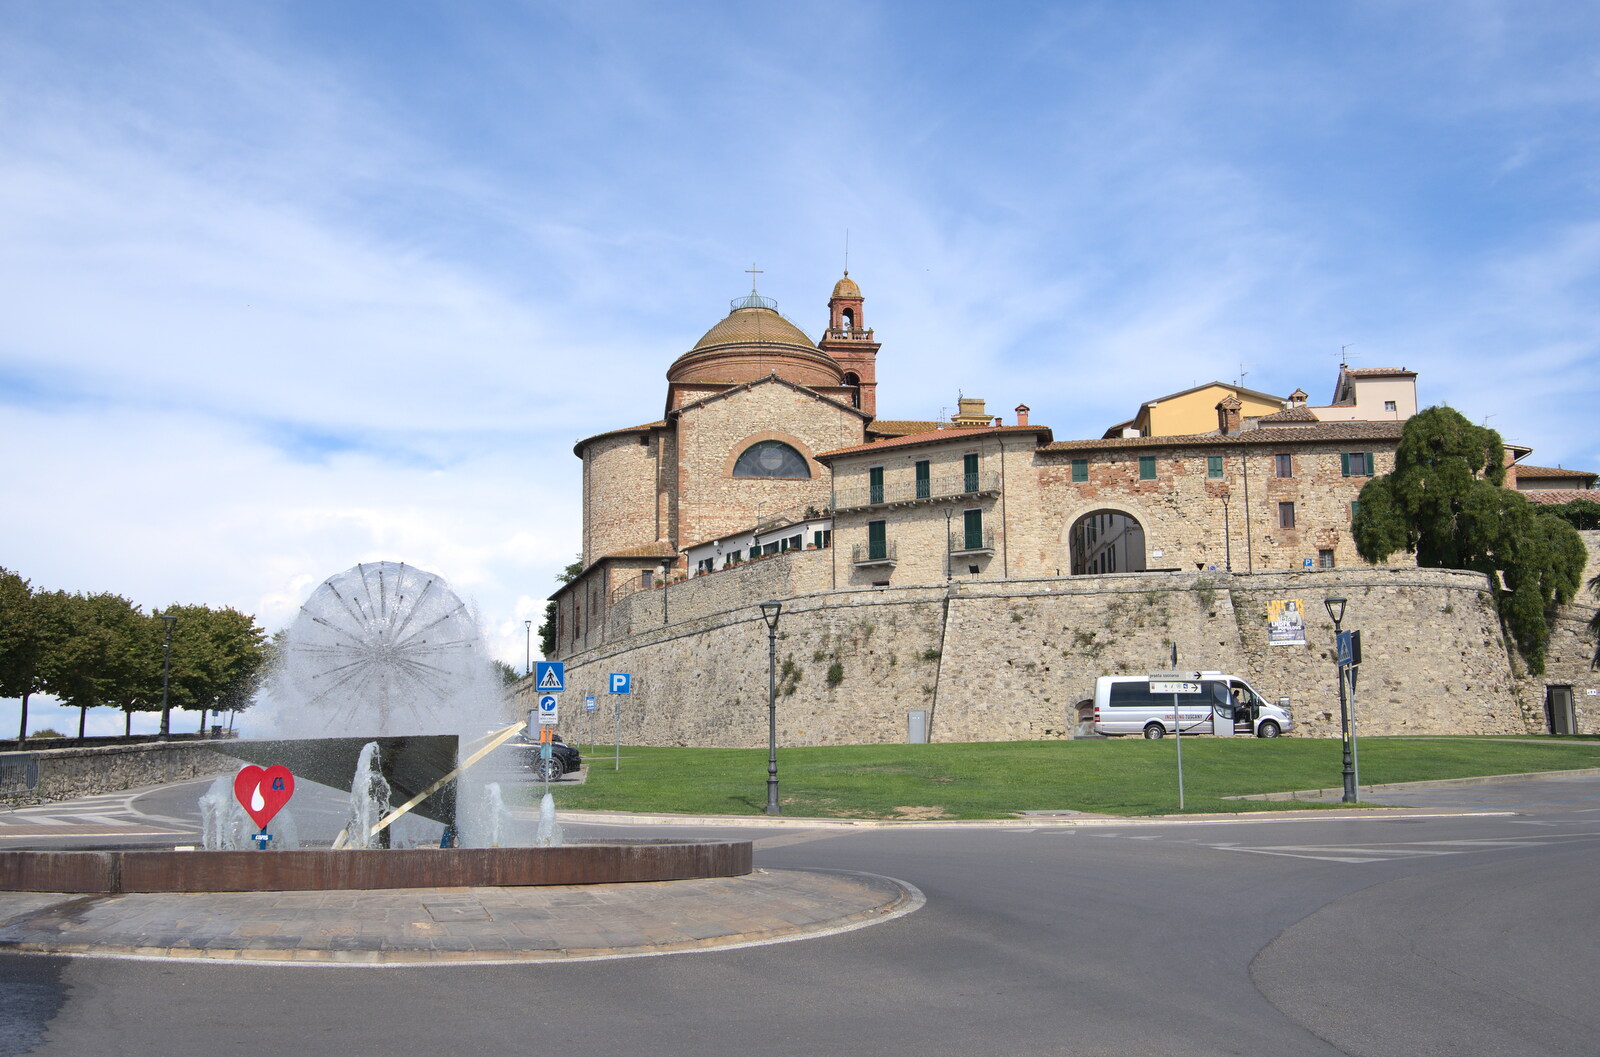 Castiglio Del Lago and Santuario della Verna, Umbria and Tuscany, Italy - 1st September 2022: The church of Santa Maria Maddalena